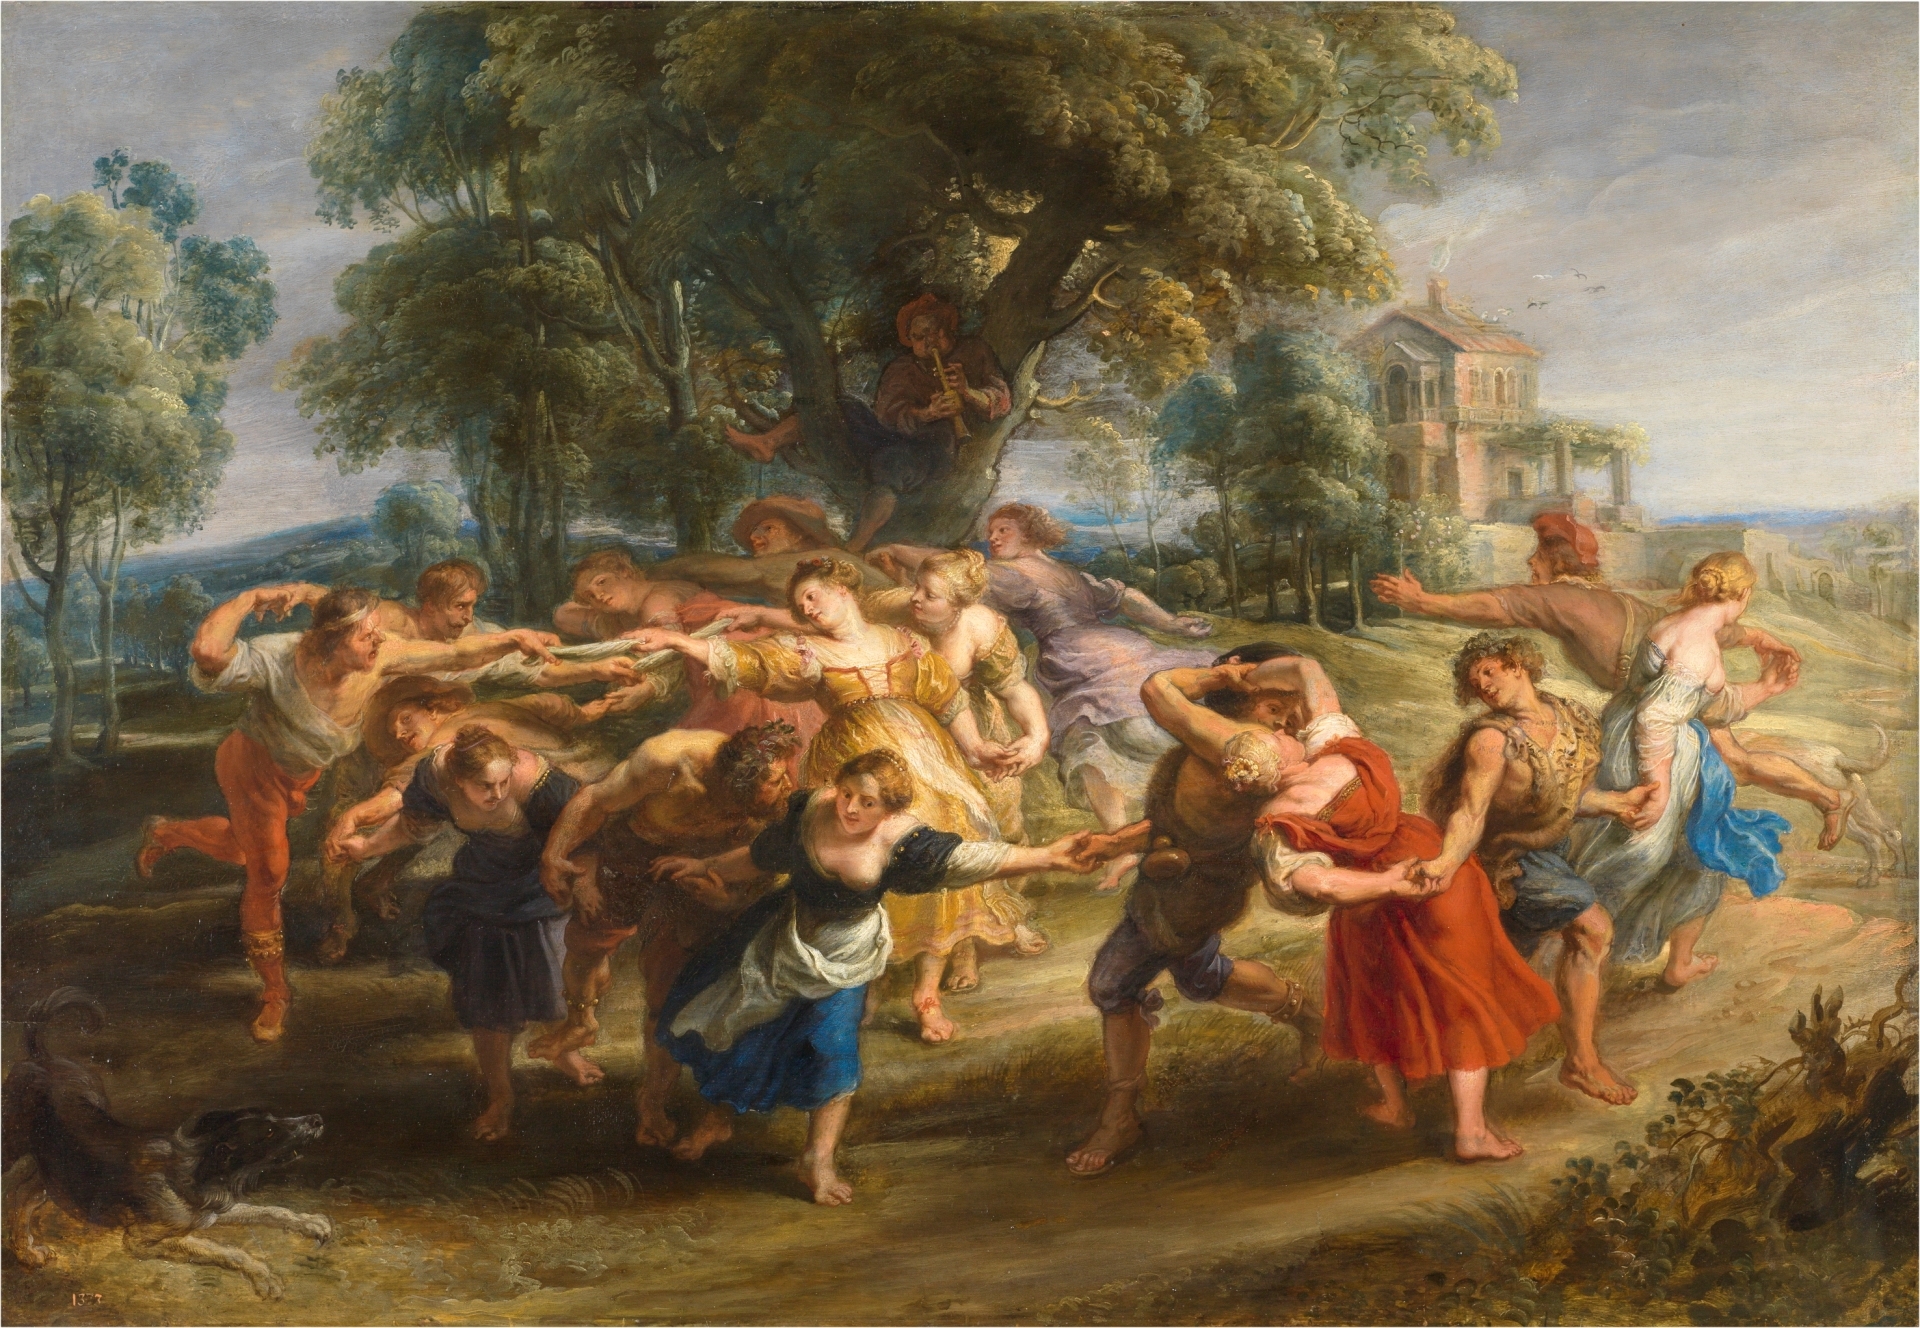 Tác phẩm “The Dance of the Villagers” (Vũ điệu của Dân làng) của họa sĩ Peter Paul Rubens, năm 1630–35. Tranh sơn dầu trên gỗ. Bảo tàng Prado, Madrid. (Ảnh: Tài liệu công cộng)